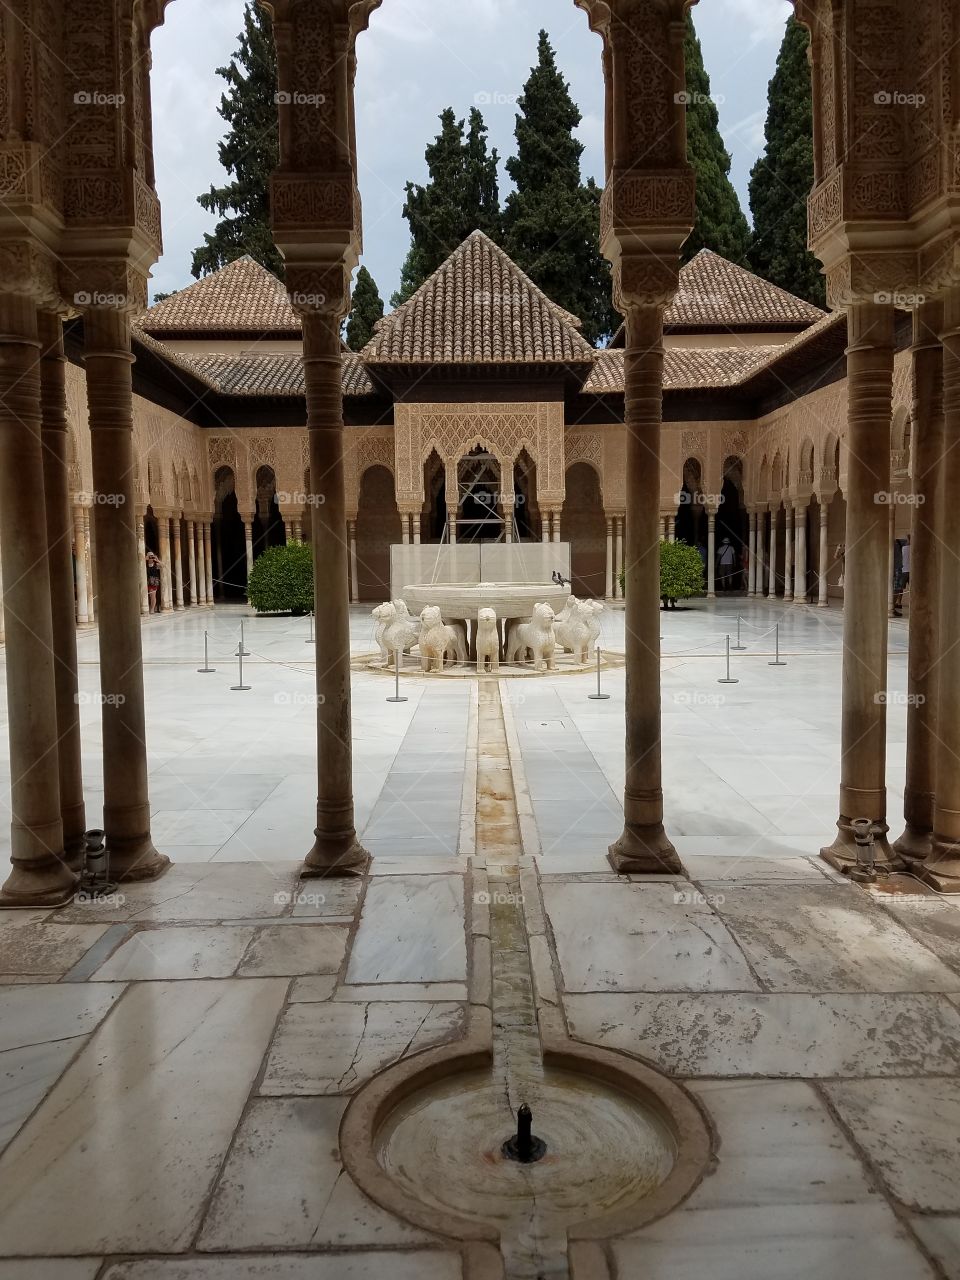 Nazaries palace at Alhambra